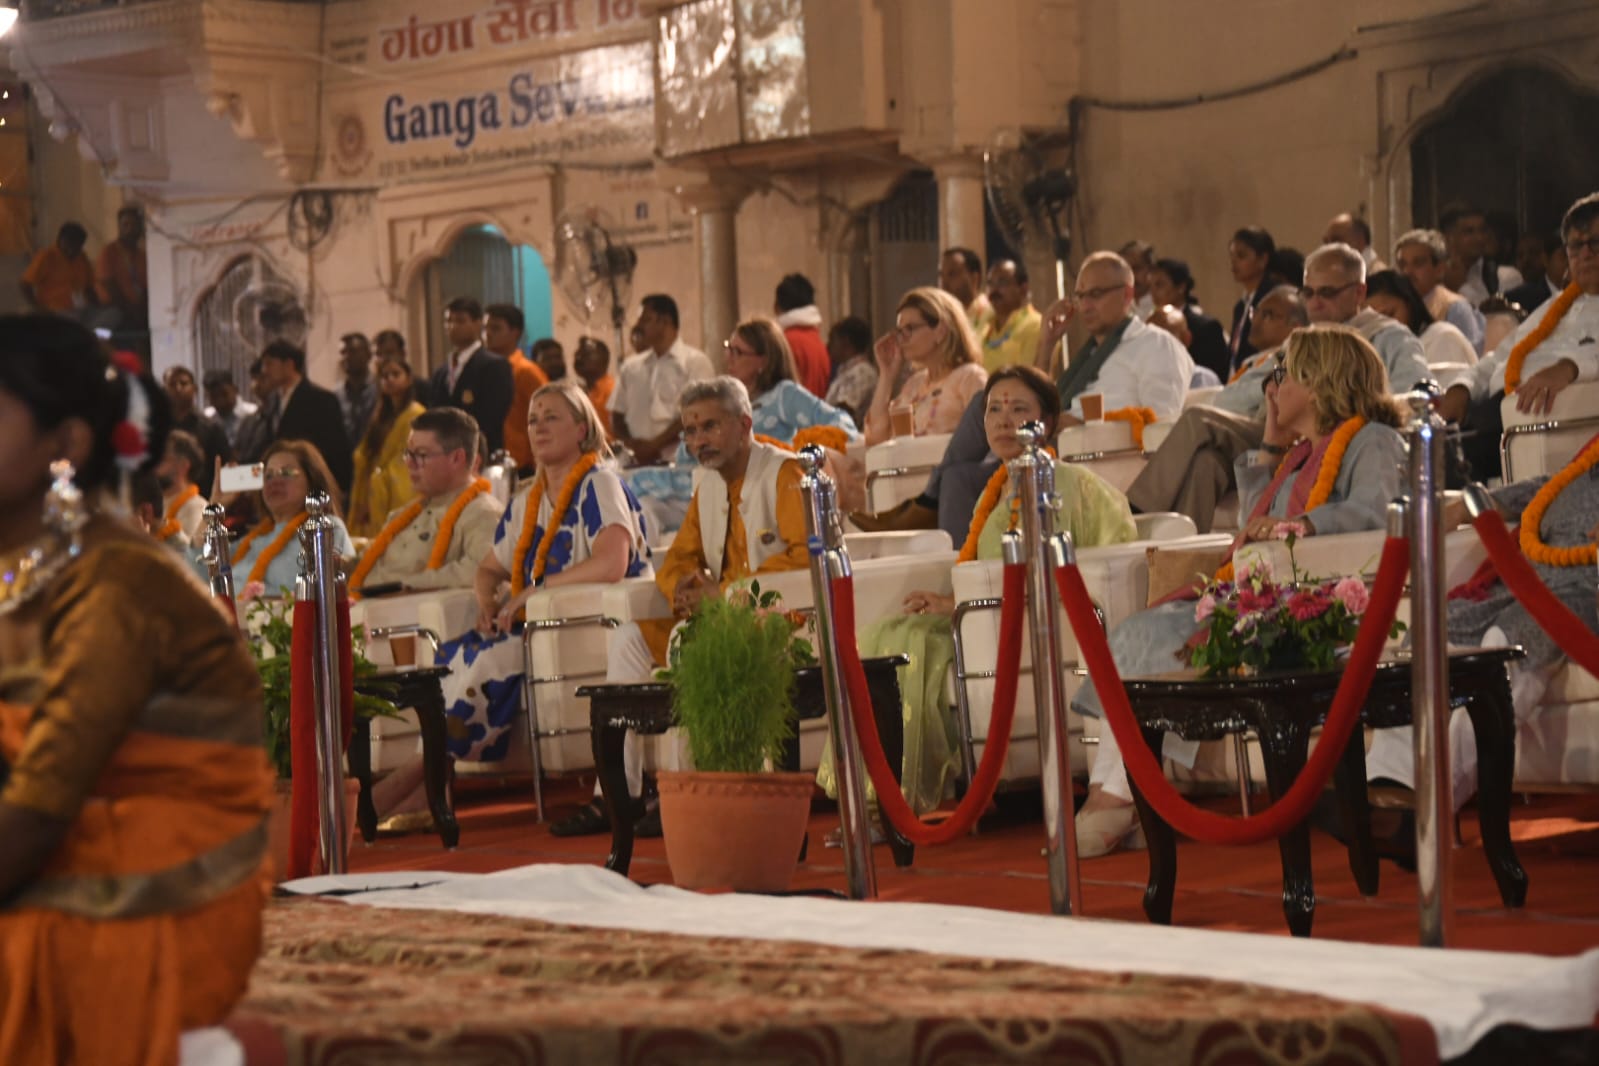 G-20, गंगा आरती देख विदेशी मेहमान हुए अभिभूत, भारतीय संस्कृति का कर रहे दर्शन